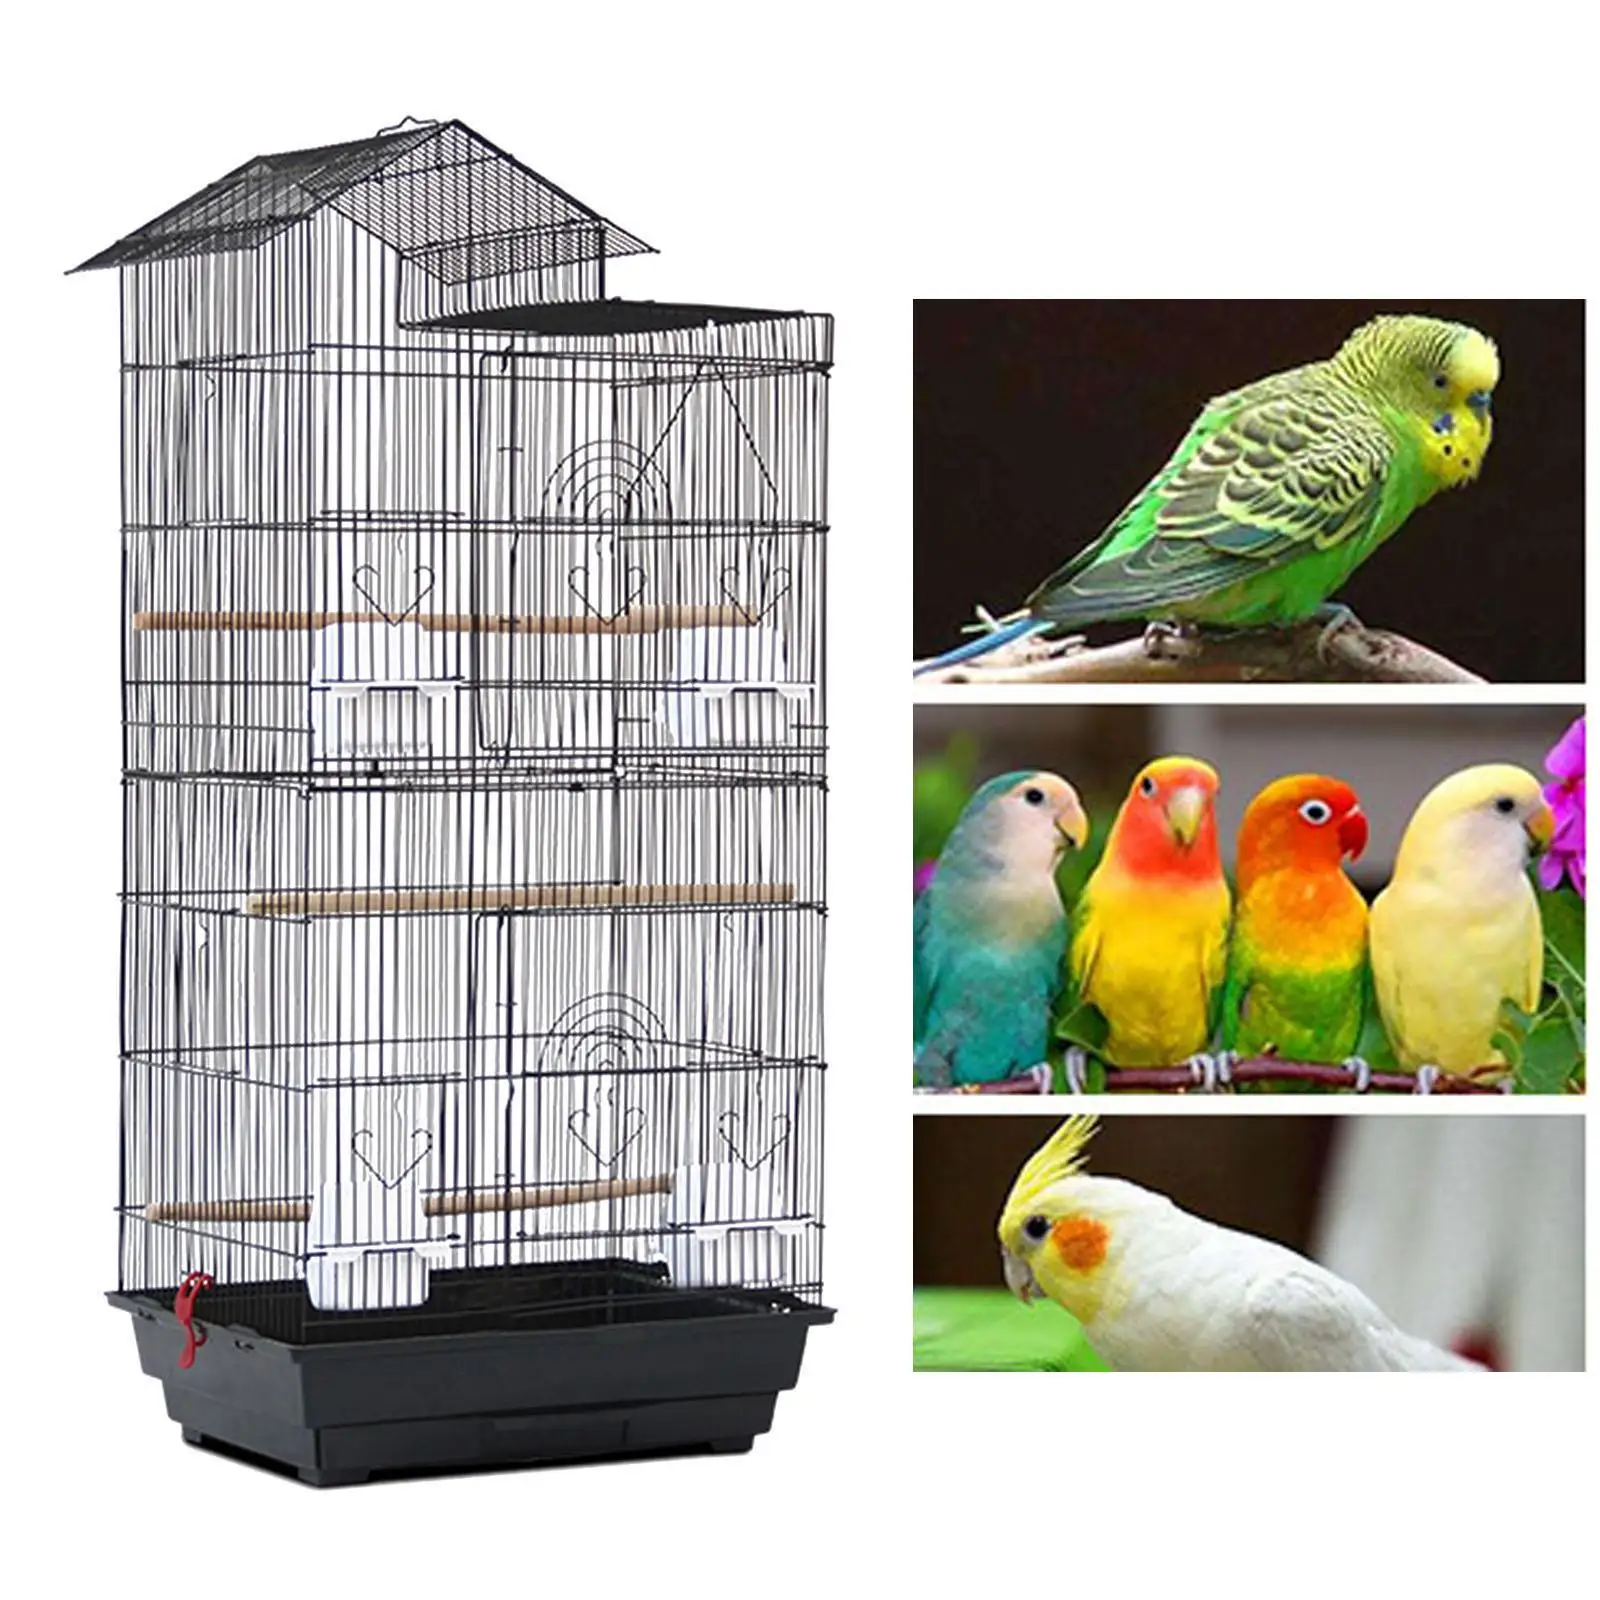 Grote Vogelkooi Papegaai Stand Kooi Huisdier Huis Dierbenodigdheden Nest Duurzaam Vogelkooi Voor Papegaai Conures Parkieten Lovebirds| | - AliExpress